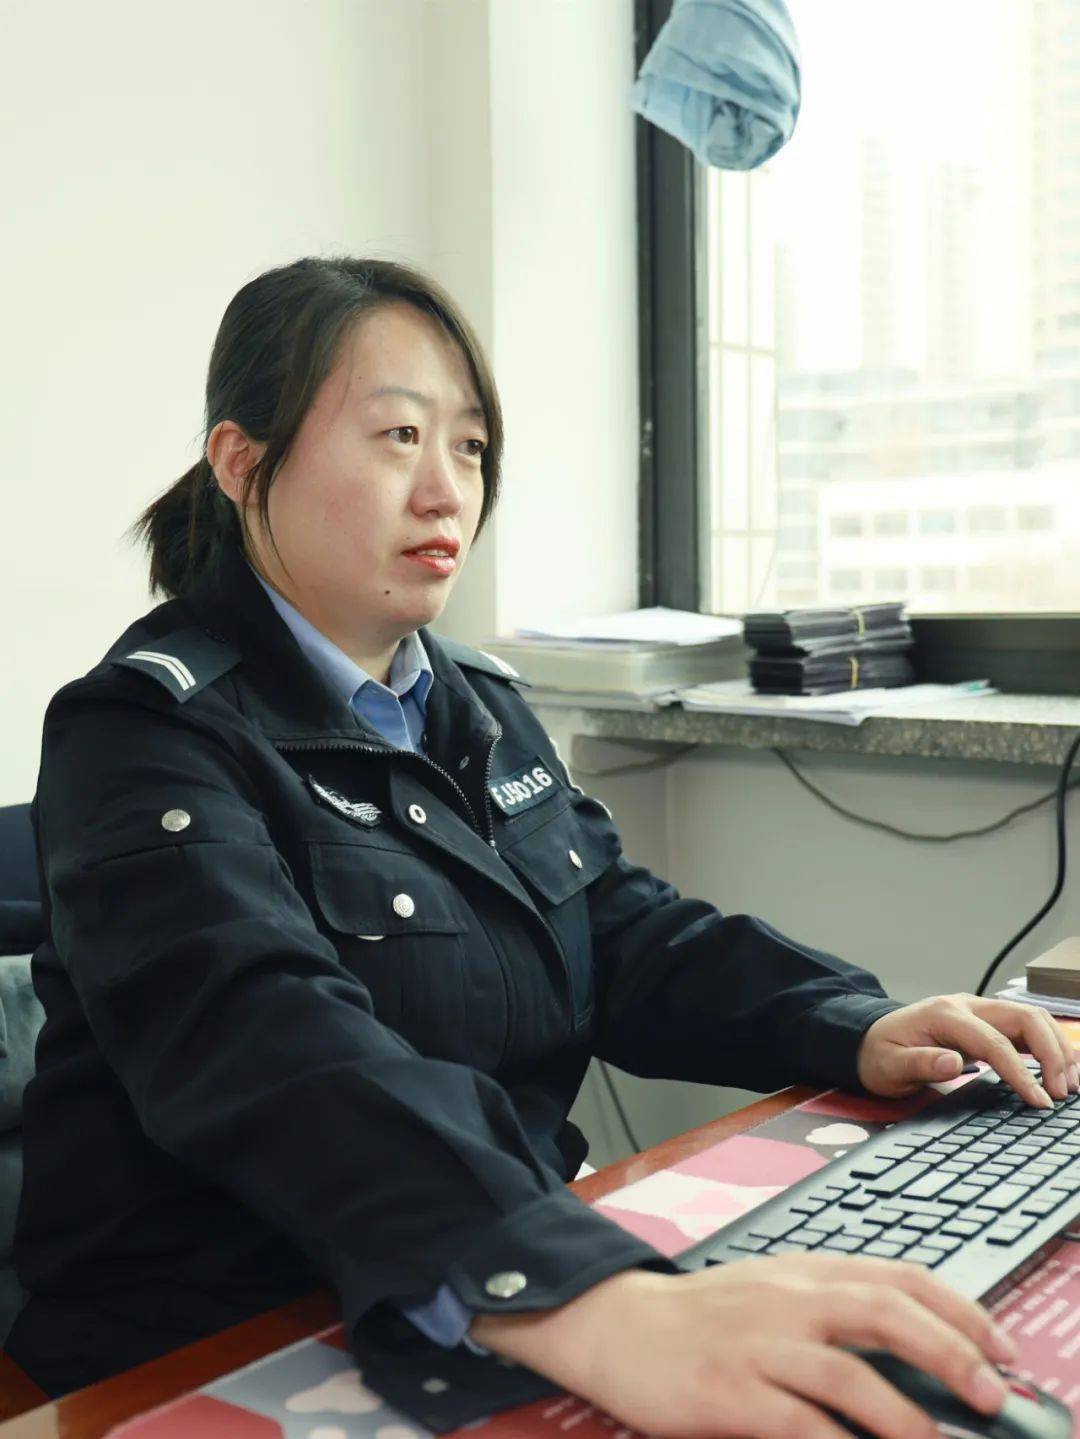 参加公安警务辅助工作以来,刘茜始终以高度的责任感和使命感,忠诚履职